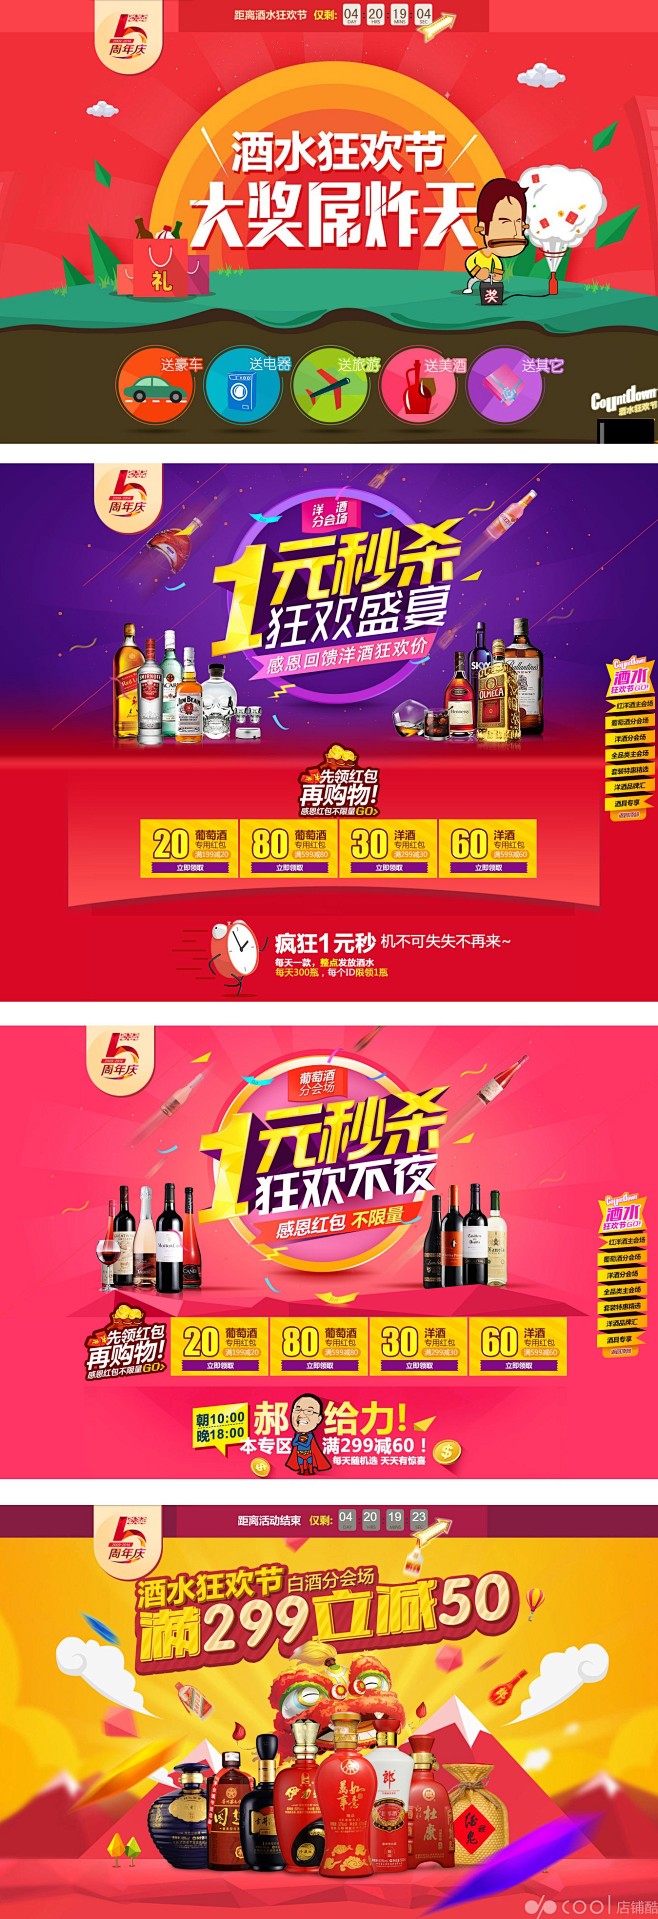 酒仙网5周年庆系列促销海报设计欣赏